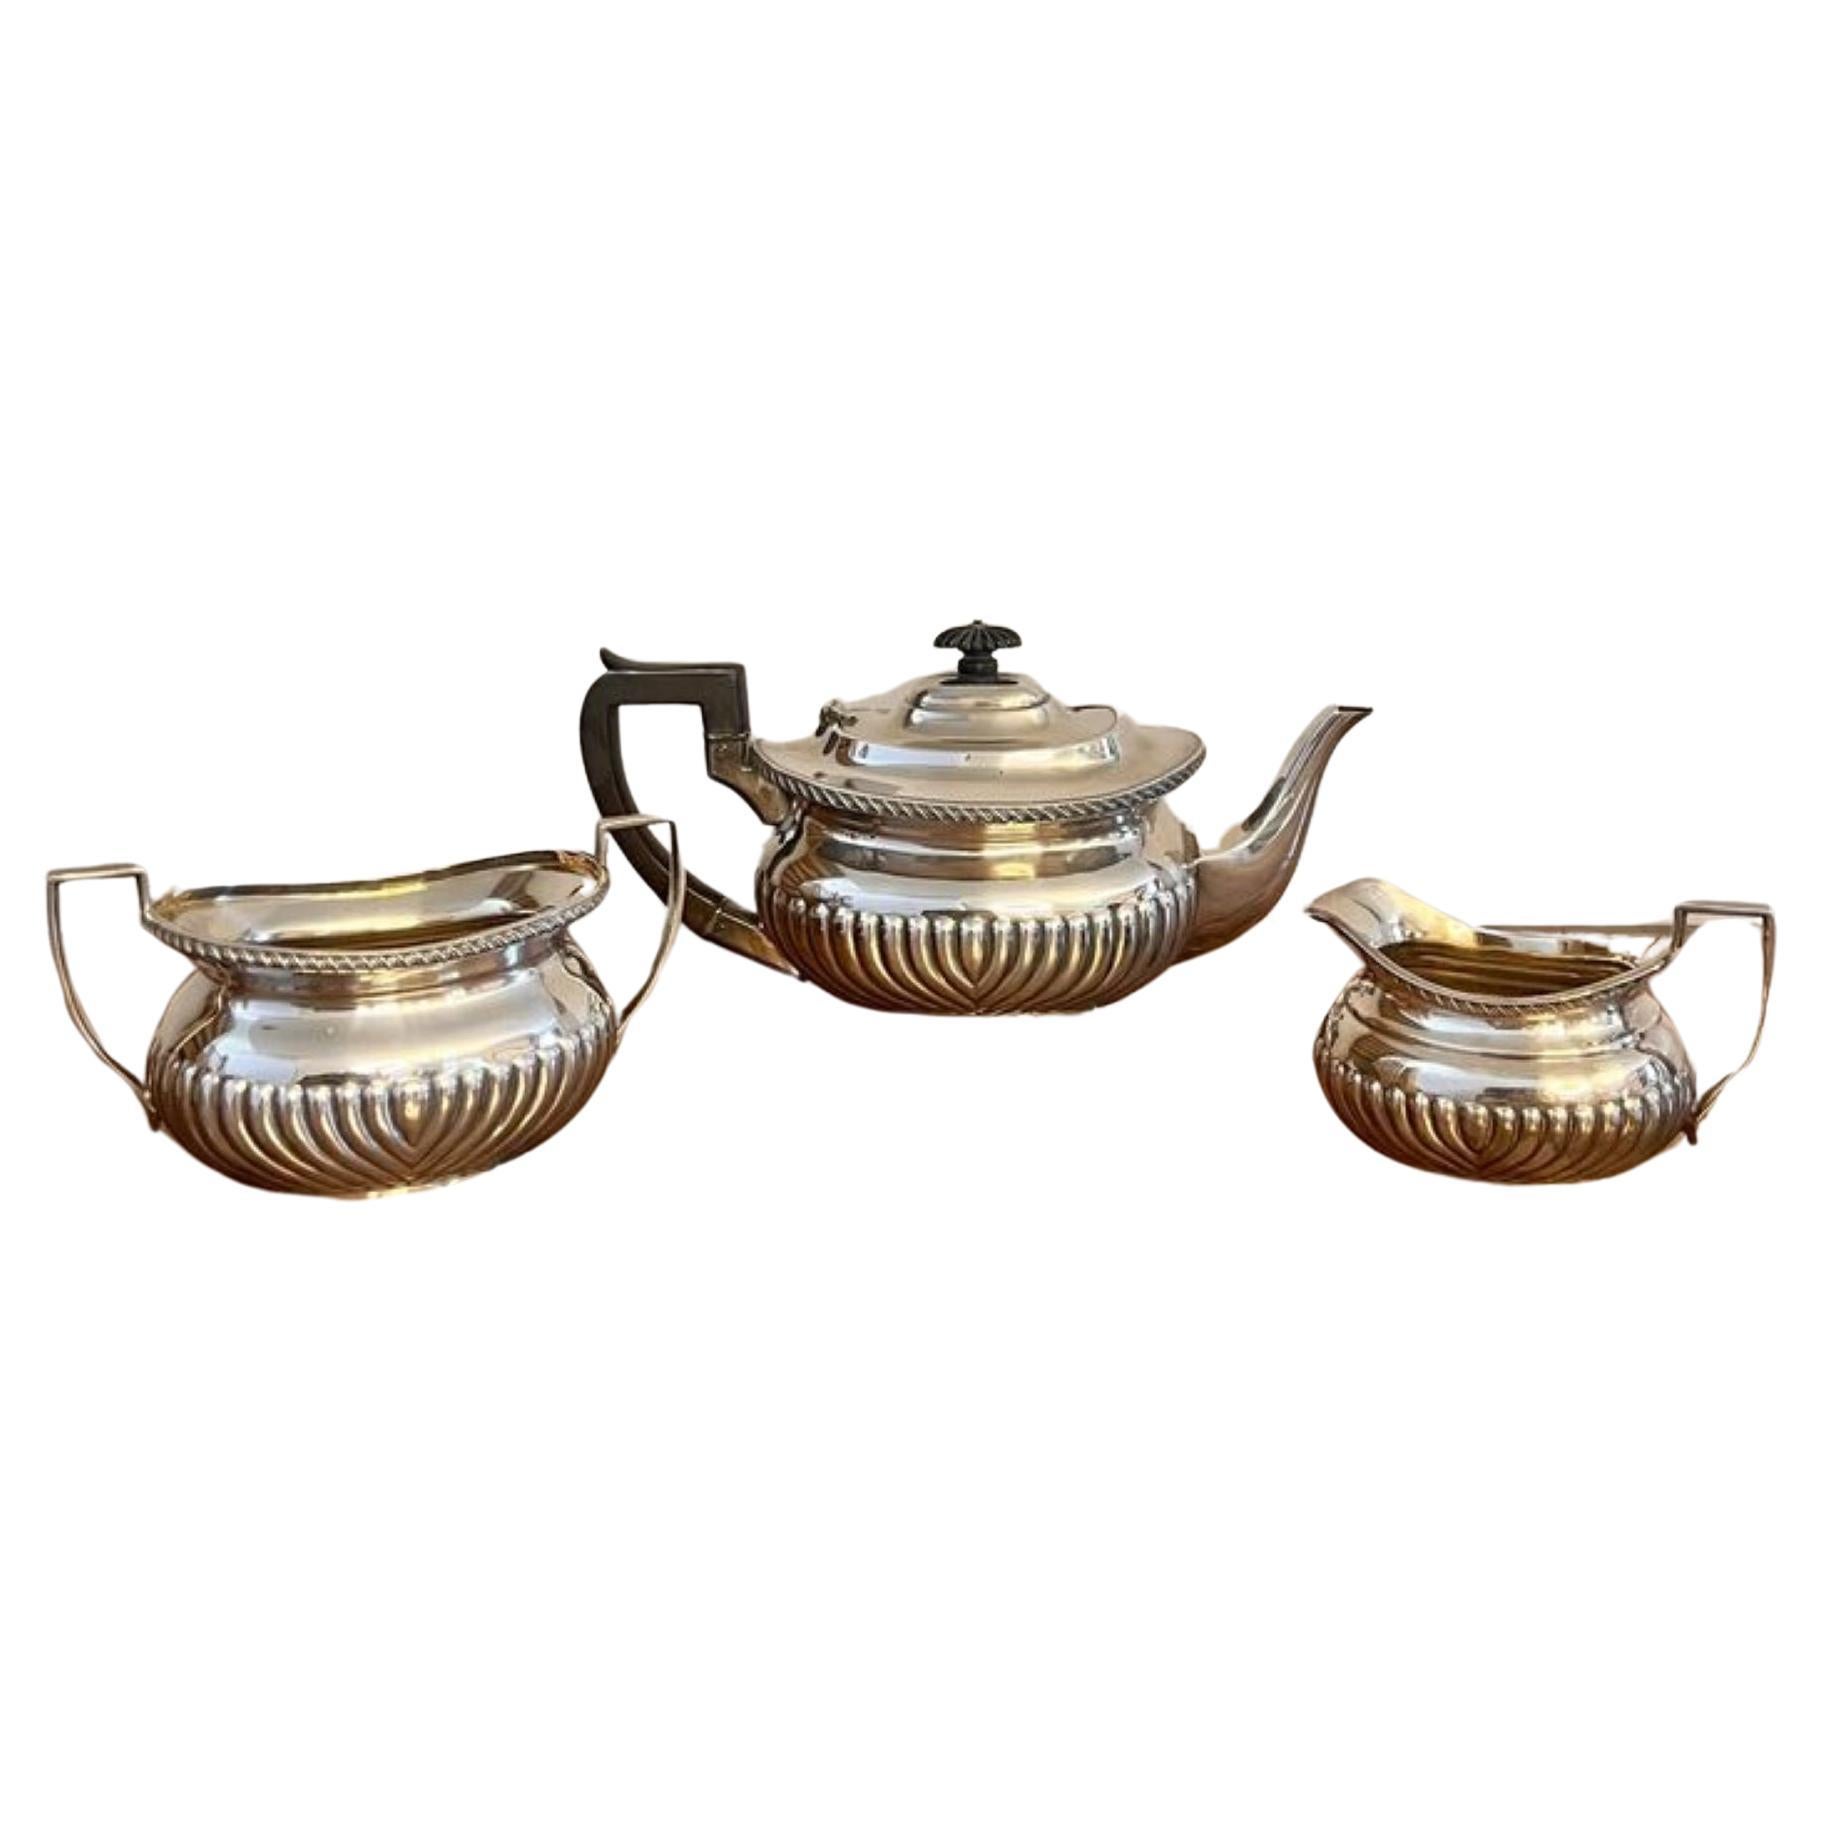 Maravilloso juego de té de tres piezas eduardiano antiguo de calidad en venta